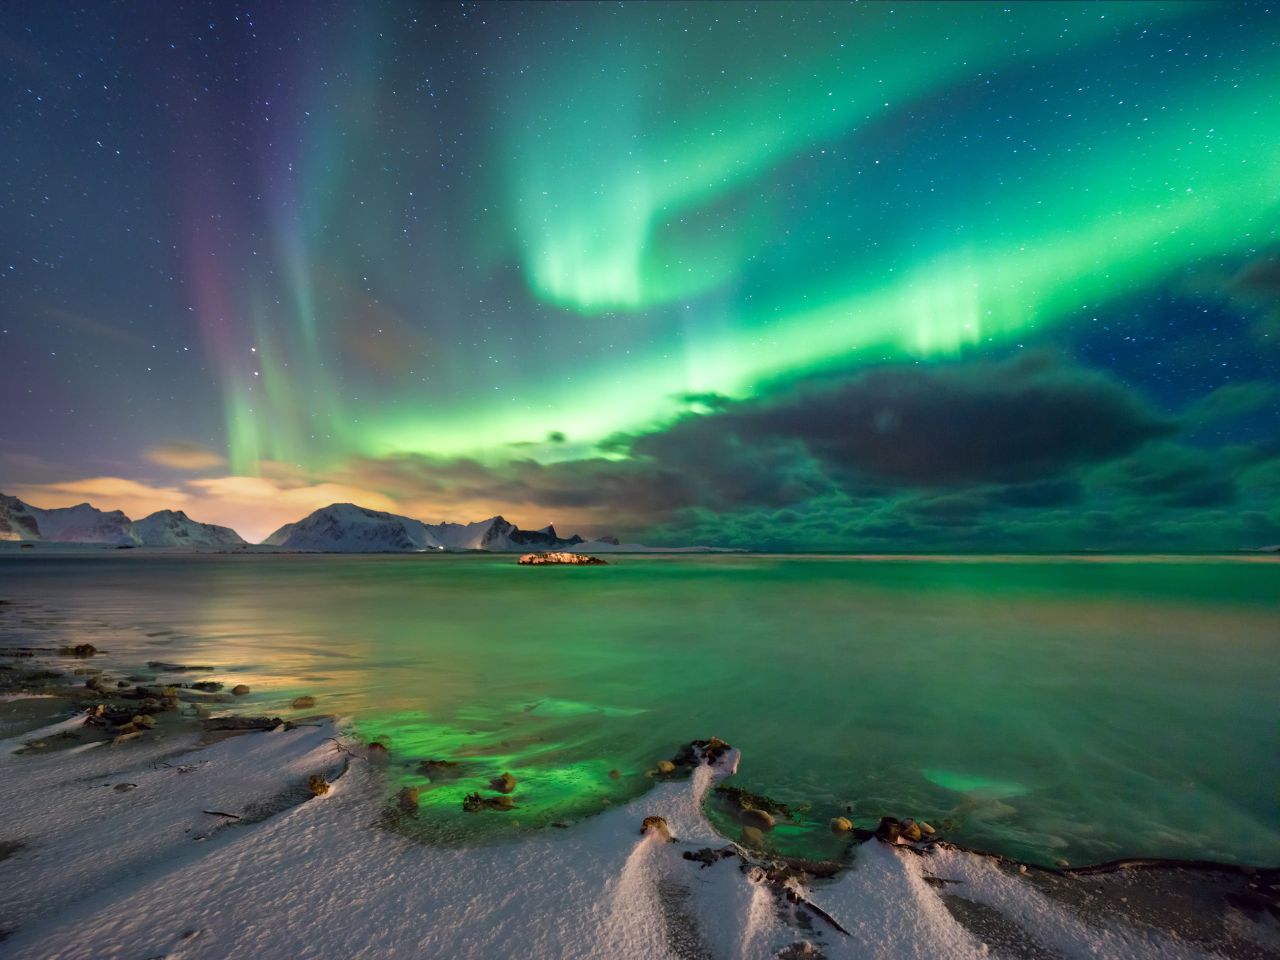 En vidéo : magnifique aurore boréale dans le ciel suédois